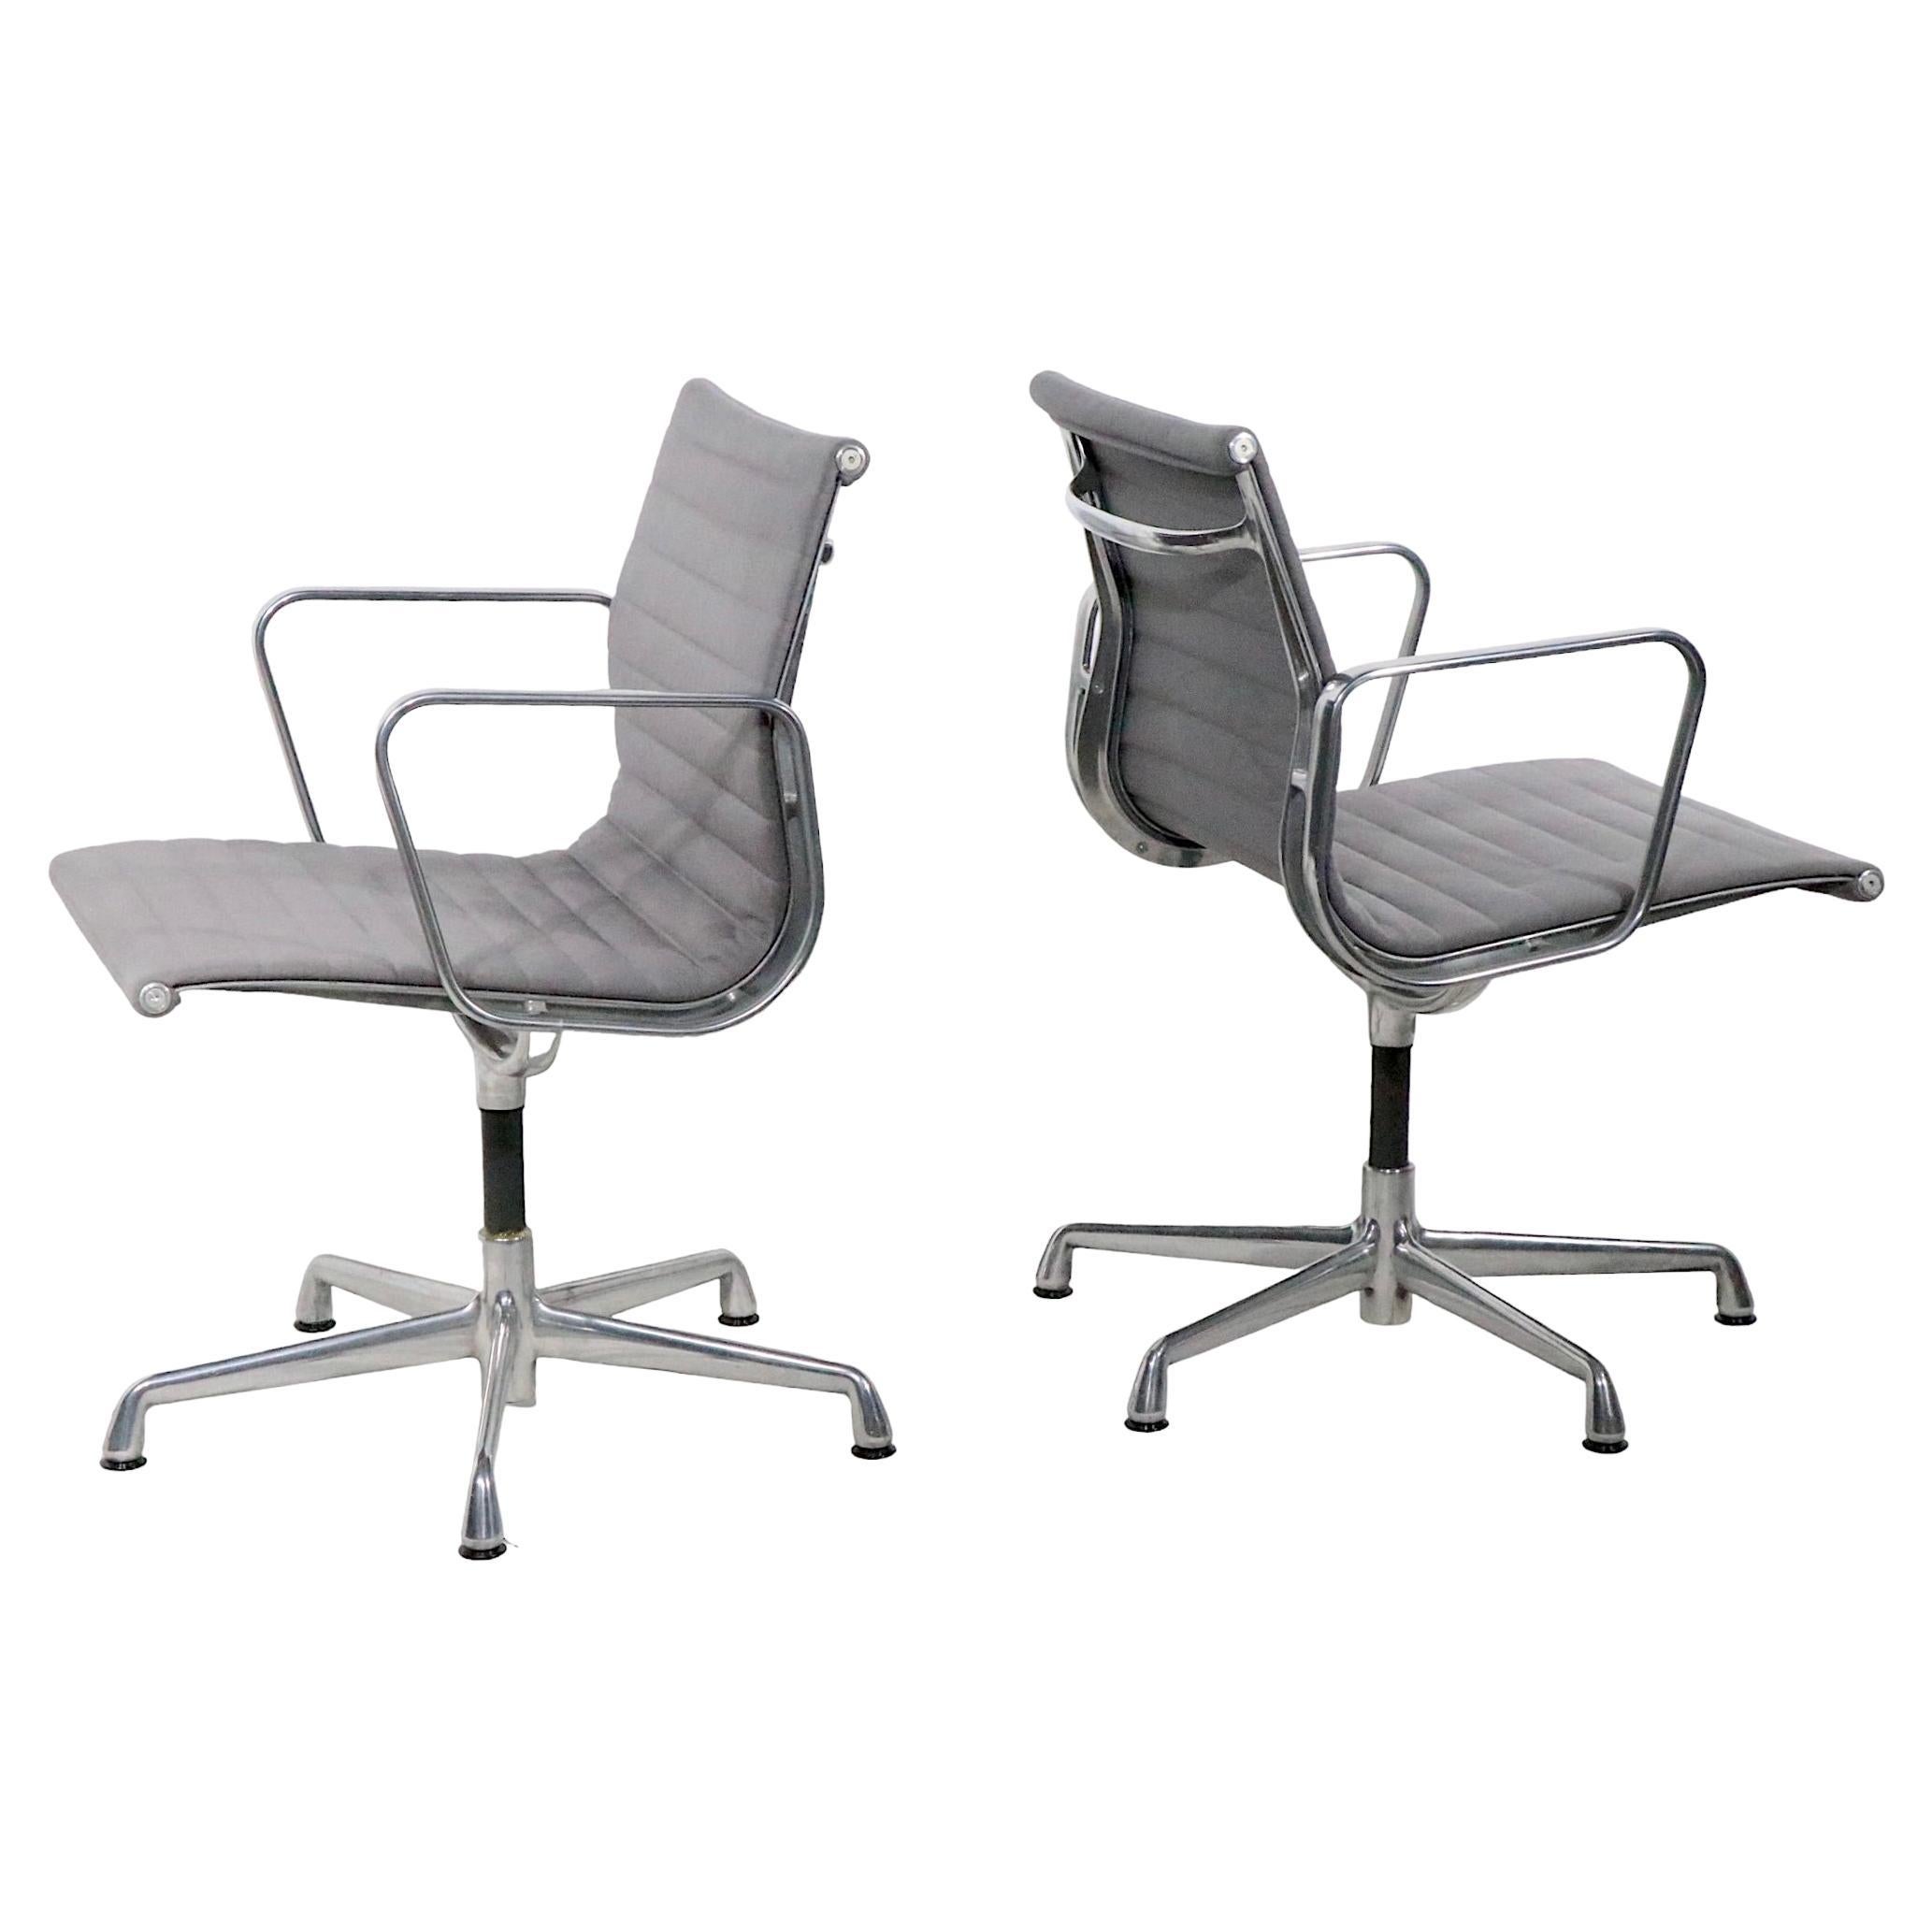 Chaises de gestion Eames tapissées de tissu gris vers 1980 - 1990 4 disponibles 